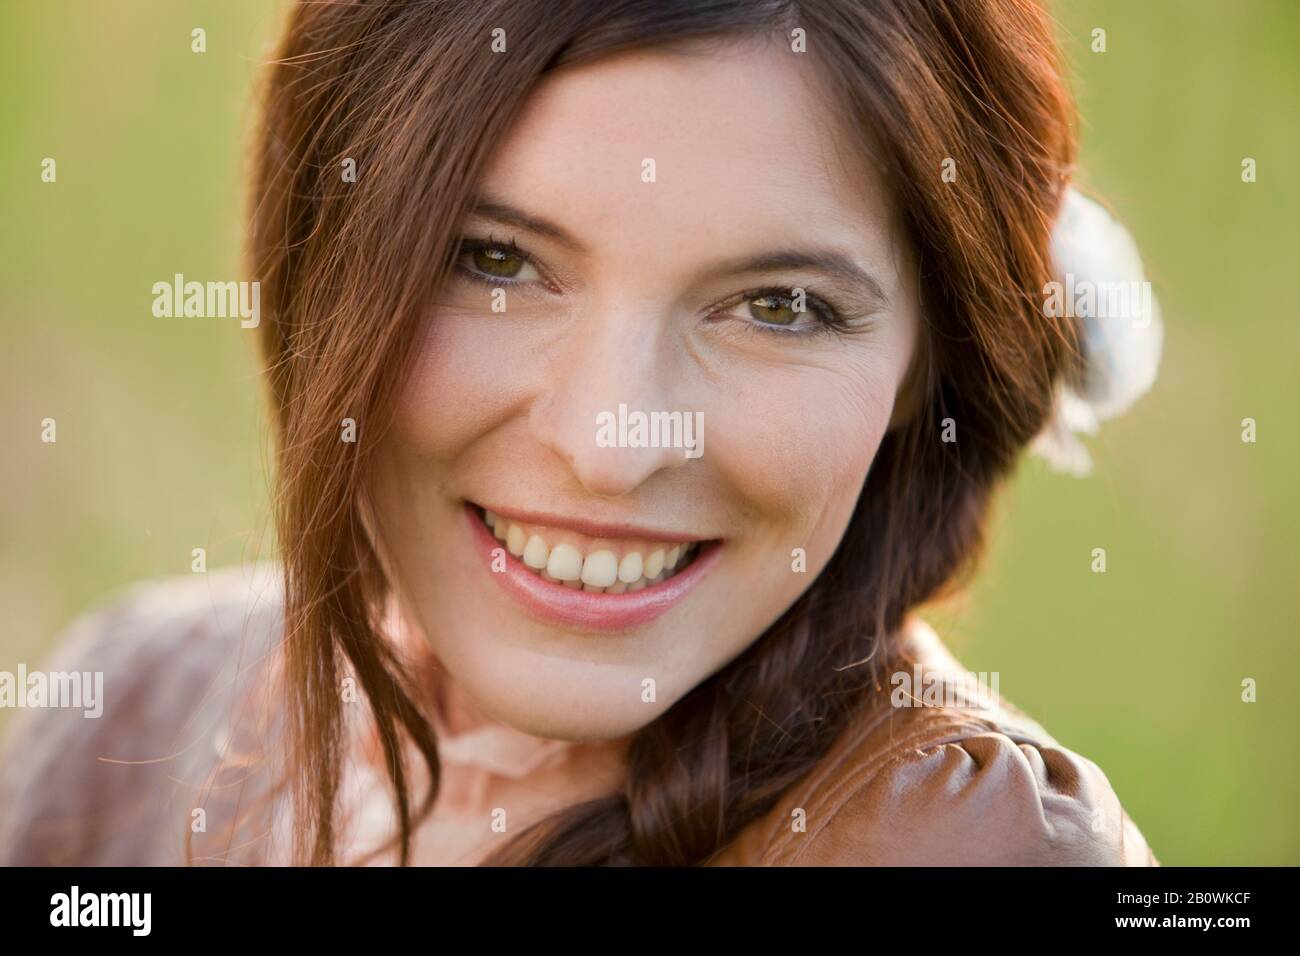 Frau mit langen brünettierten Haaren - Porträt Stockfoto